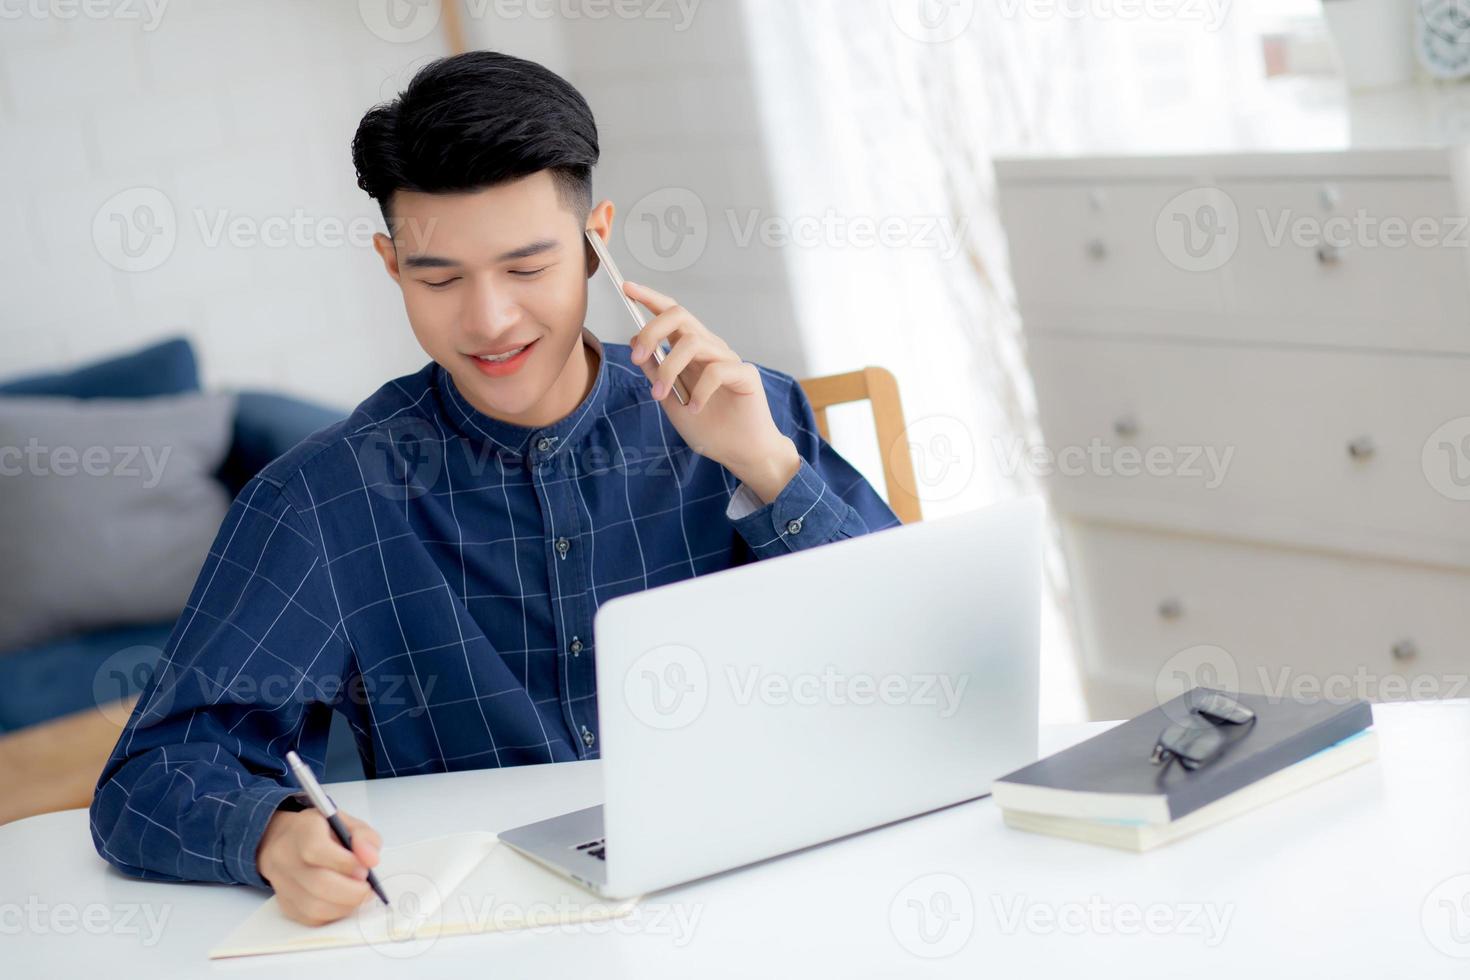 jeune homme asiatique parlant au téléphone et travaillant à domicile avec un ordinateur portable, un homme indépendant écrivant sur un ordinateur portable et parlant sur un smartphone, restez à la maison, vie domestique, concept d'entreprise et de communication. photo